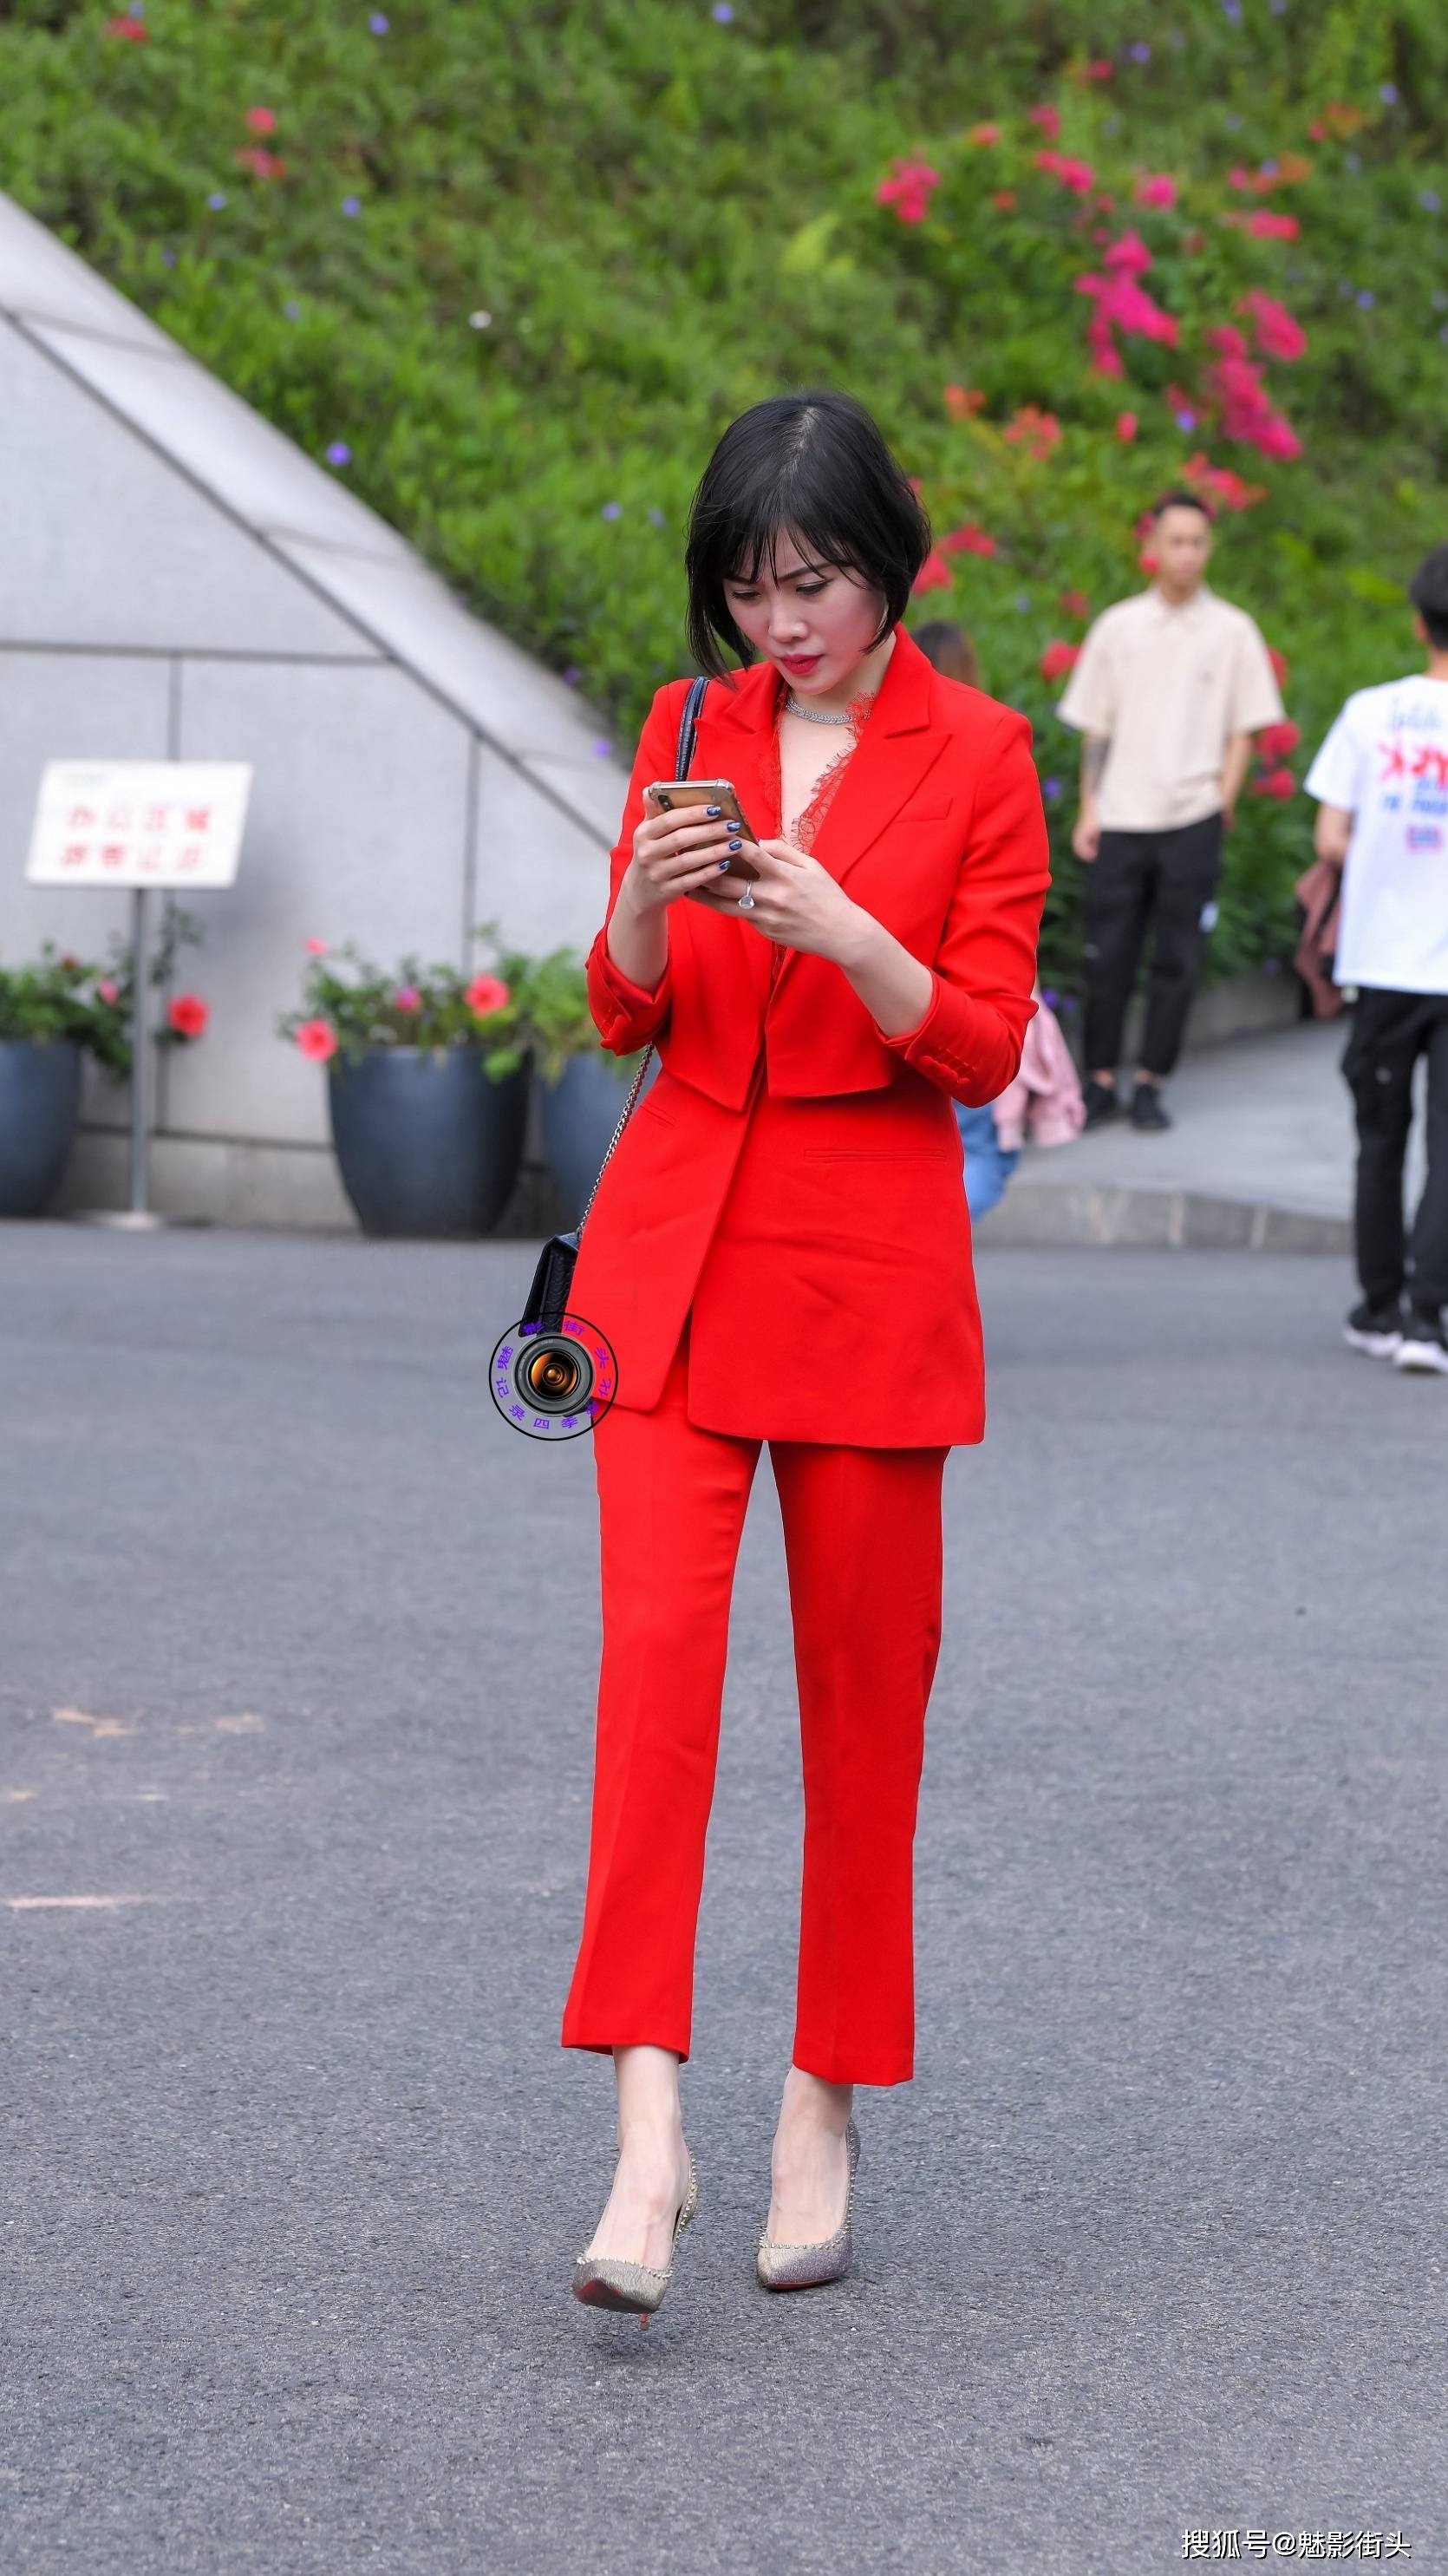 精致的短发美女红色西服套装搭配紫色尖头细跟鞋展现高贵气质